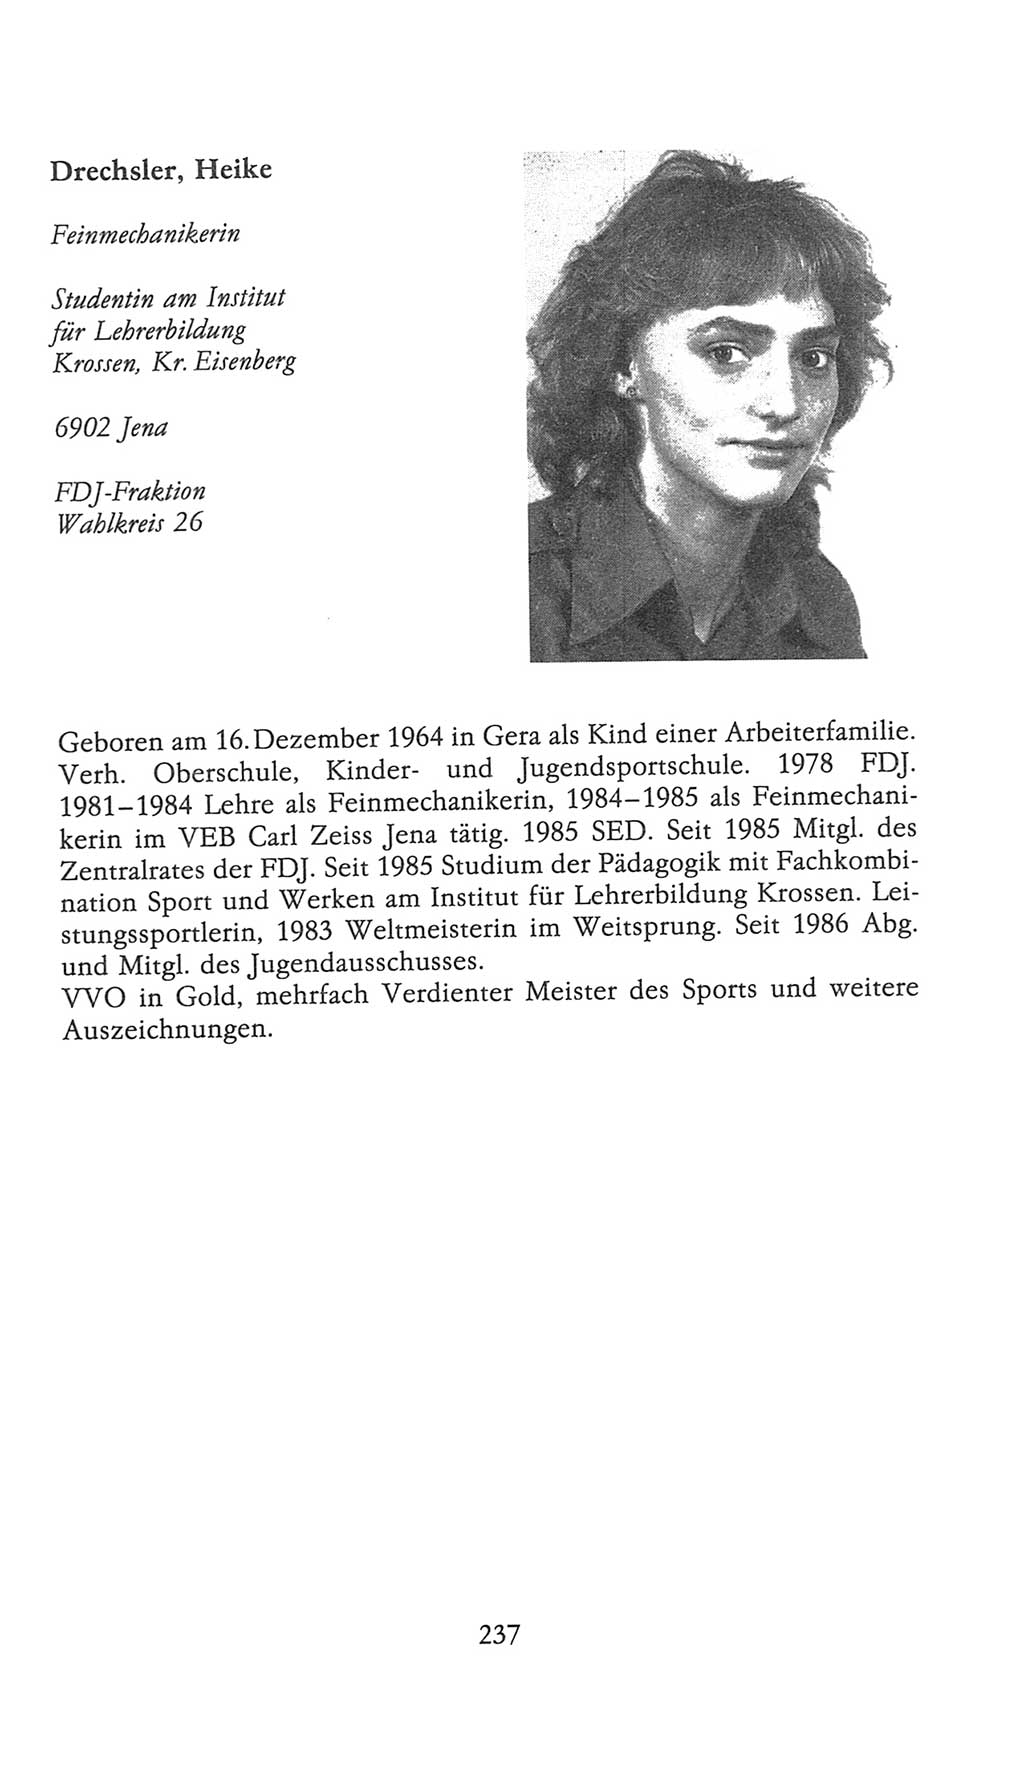 Volkskammer (VK) der Deutschen Demokratischen Republik (DDR), 9. Wahlperiode 1986-1990, Seite 237 (VK. DDR 9. WP. 1986-1990, S. 237)